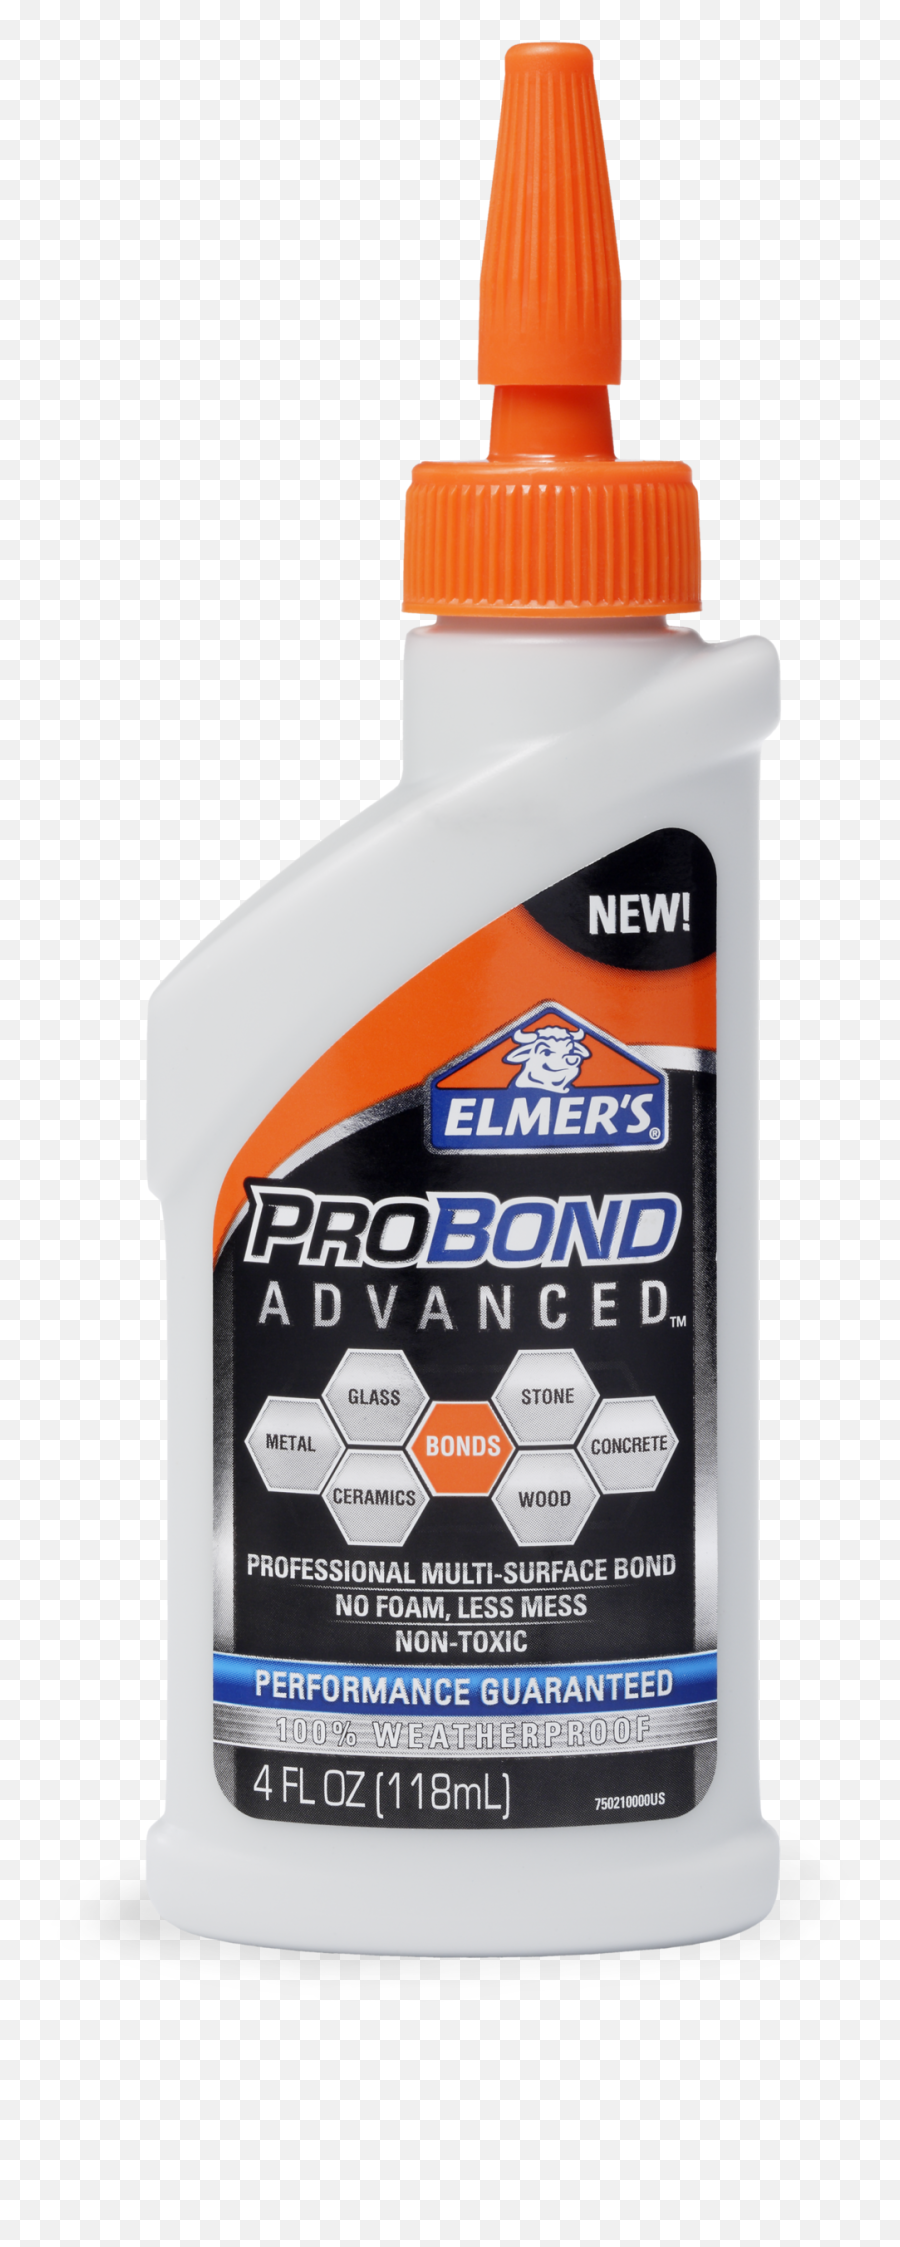 Download Portfolio - Elmeru0027s Glue Png Image With No Probond Advanced Glue Emoji,Elmer's Glue Logo